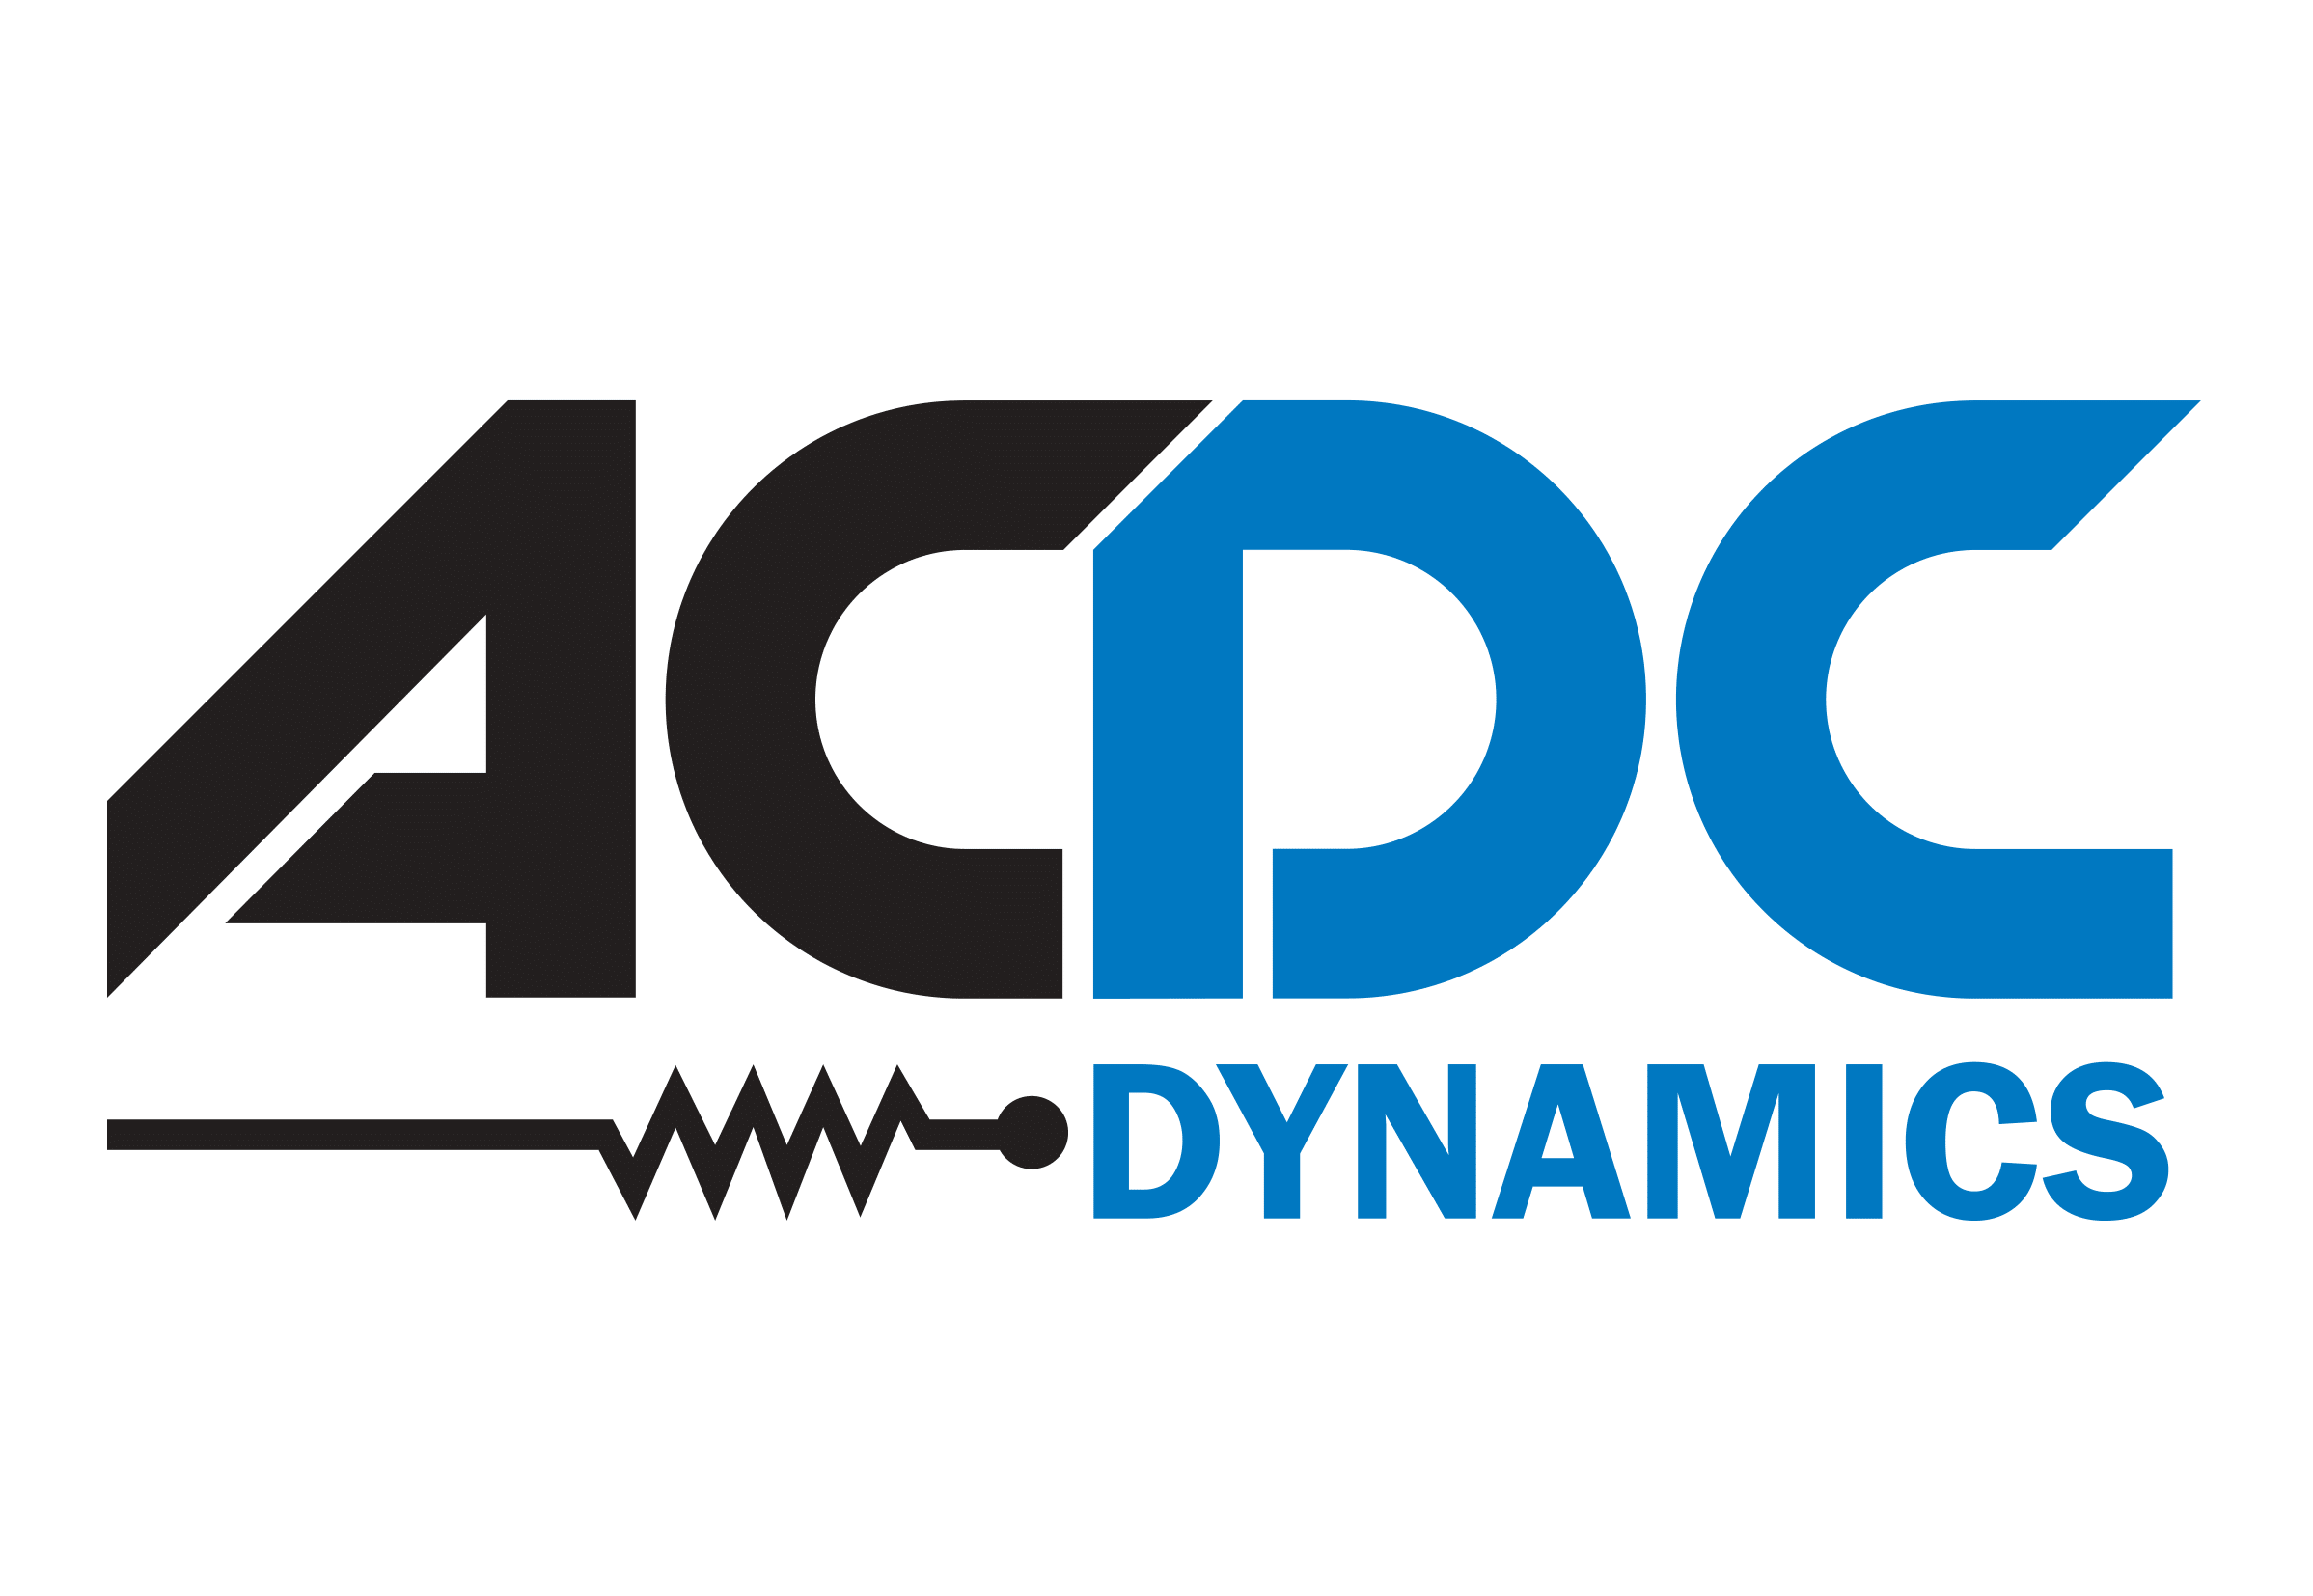 ACDC CMYK-1